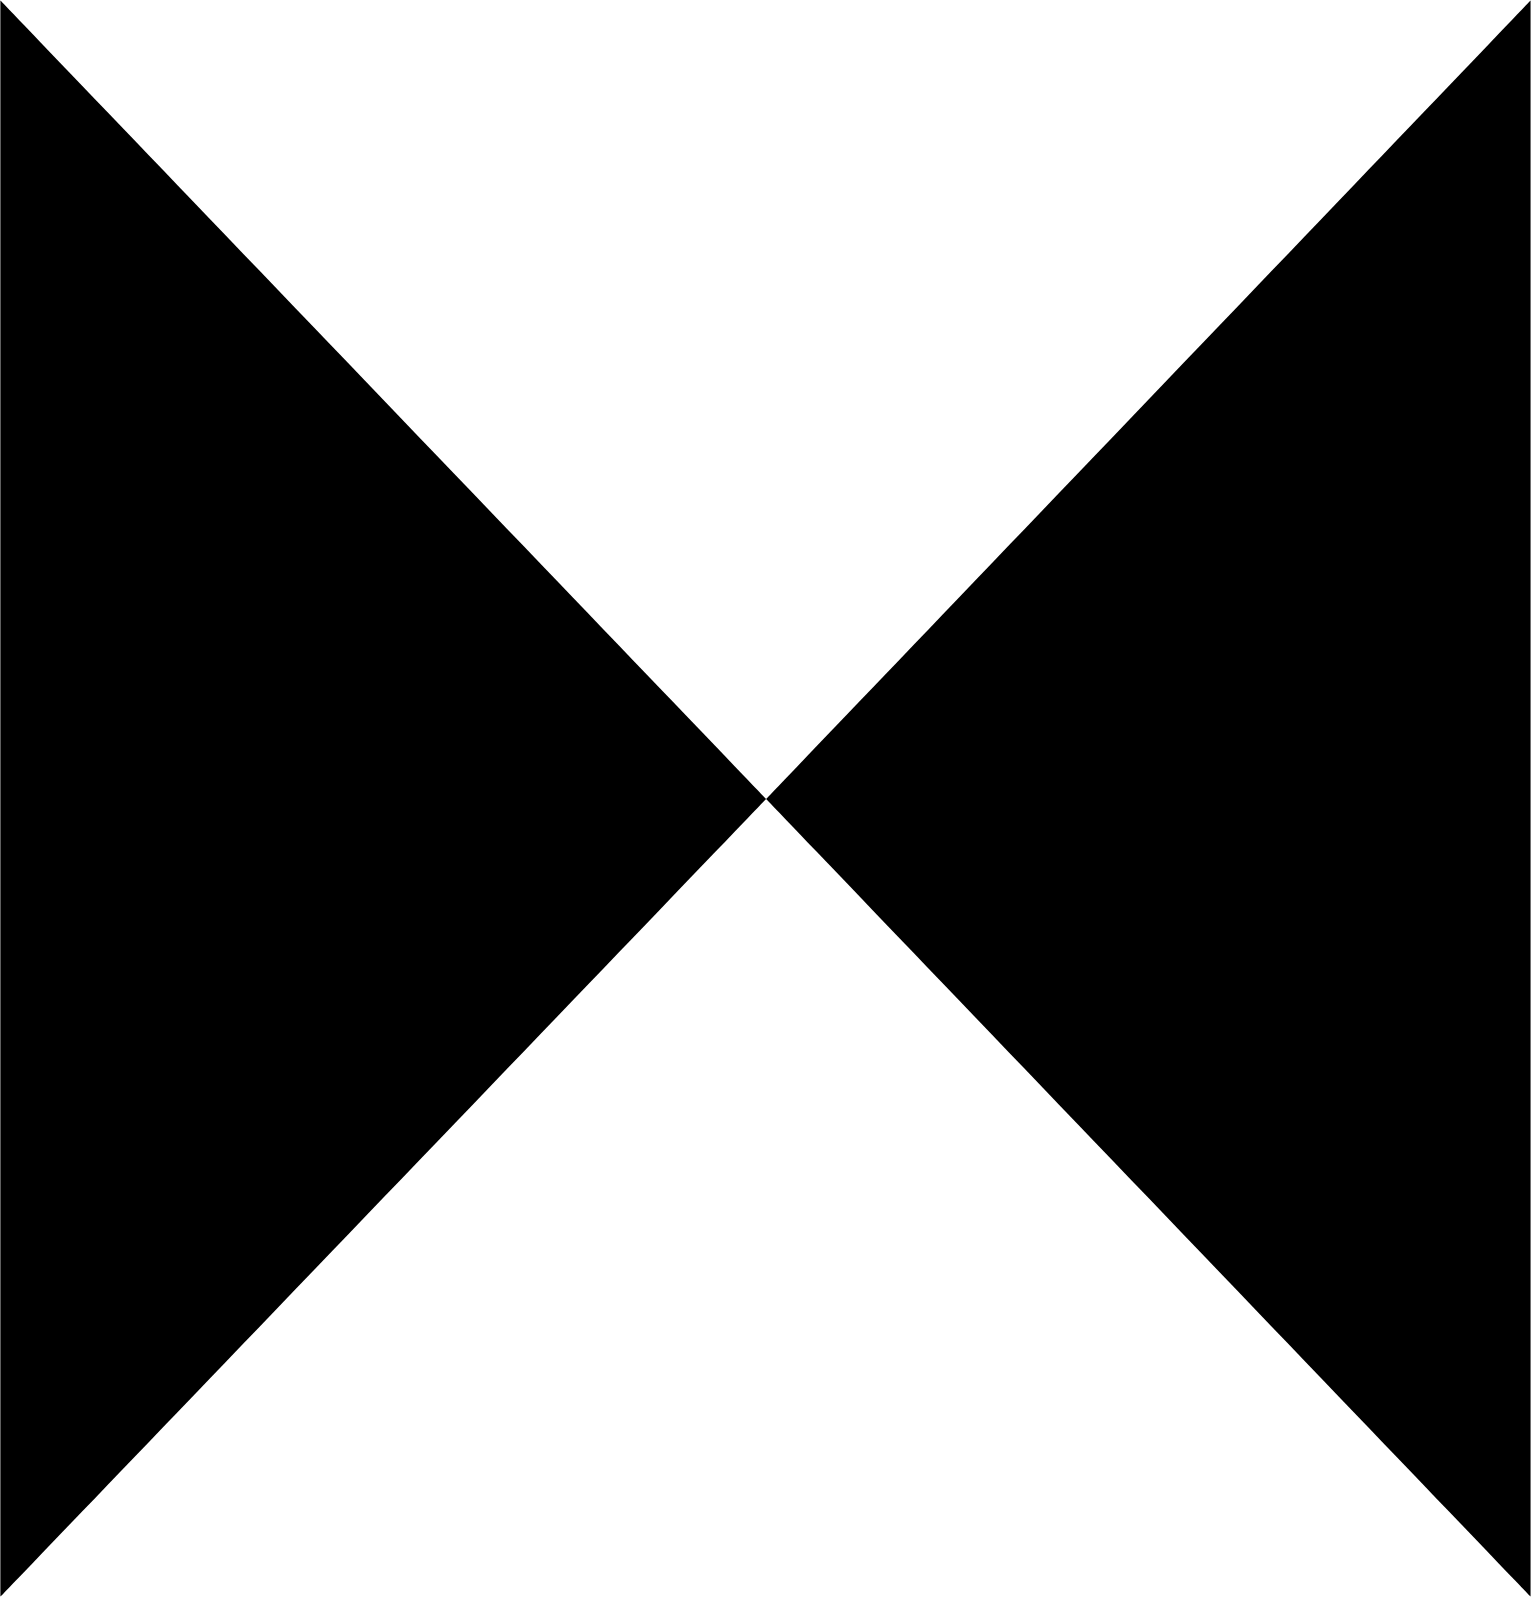 REN (Redes Energéticas Nacionais) logo (transparent PNG)